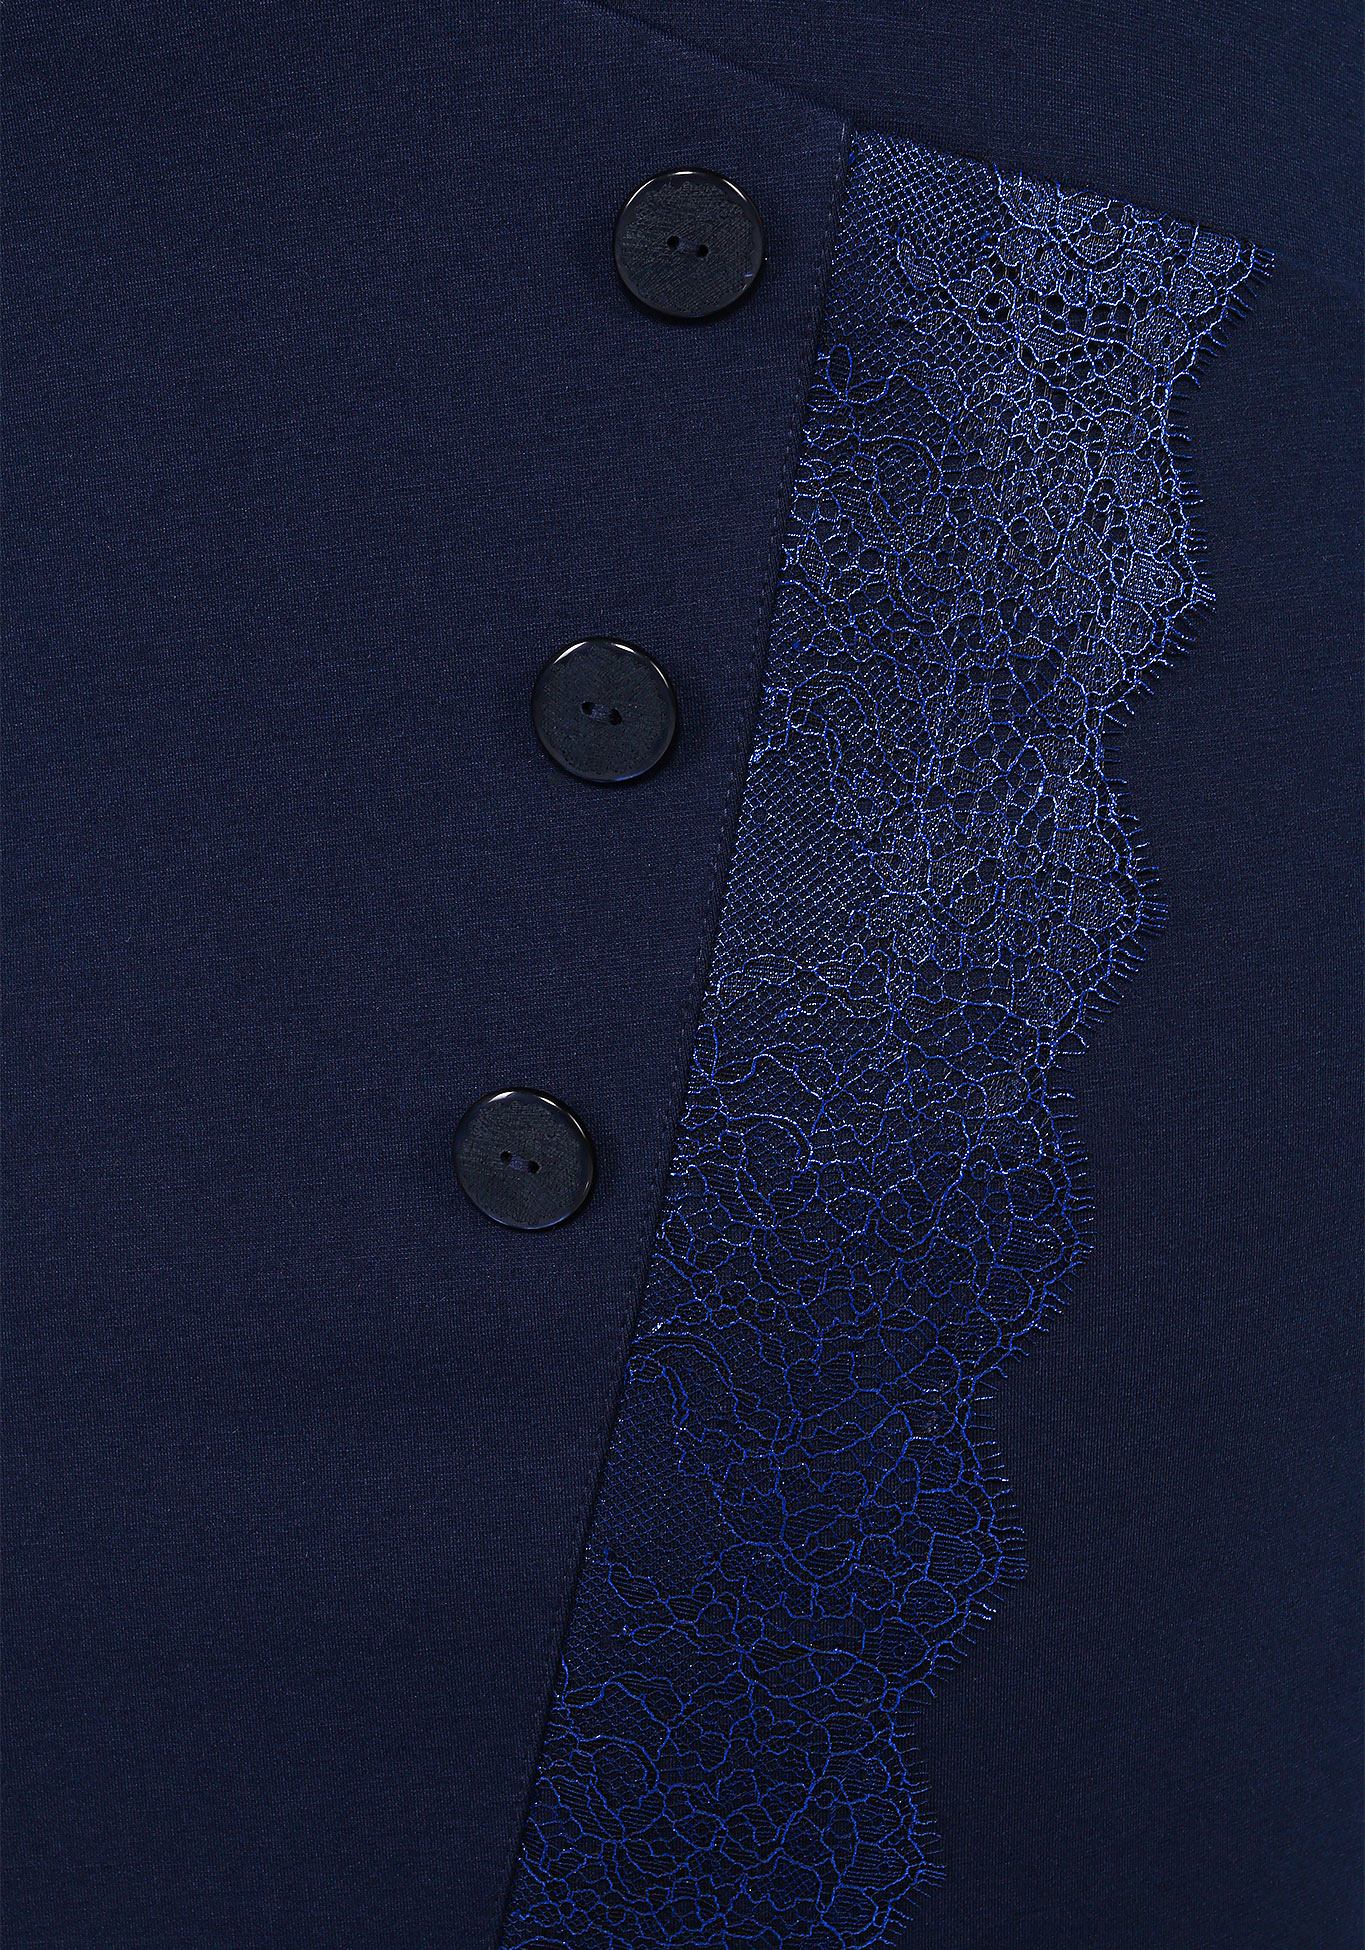 Юбка с декоративными пуговицами и кружевом GalaGrosso, размер 50, цвет темно-синий - фото 4